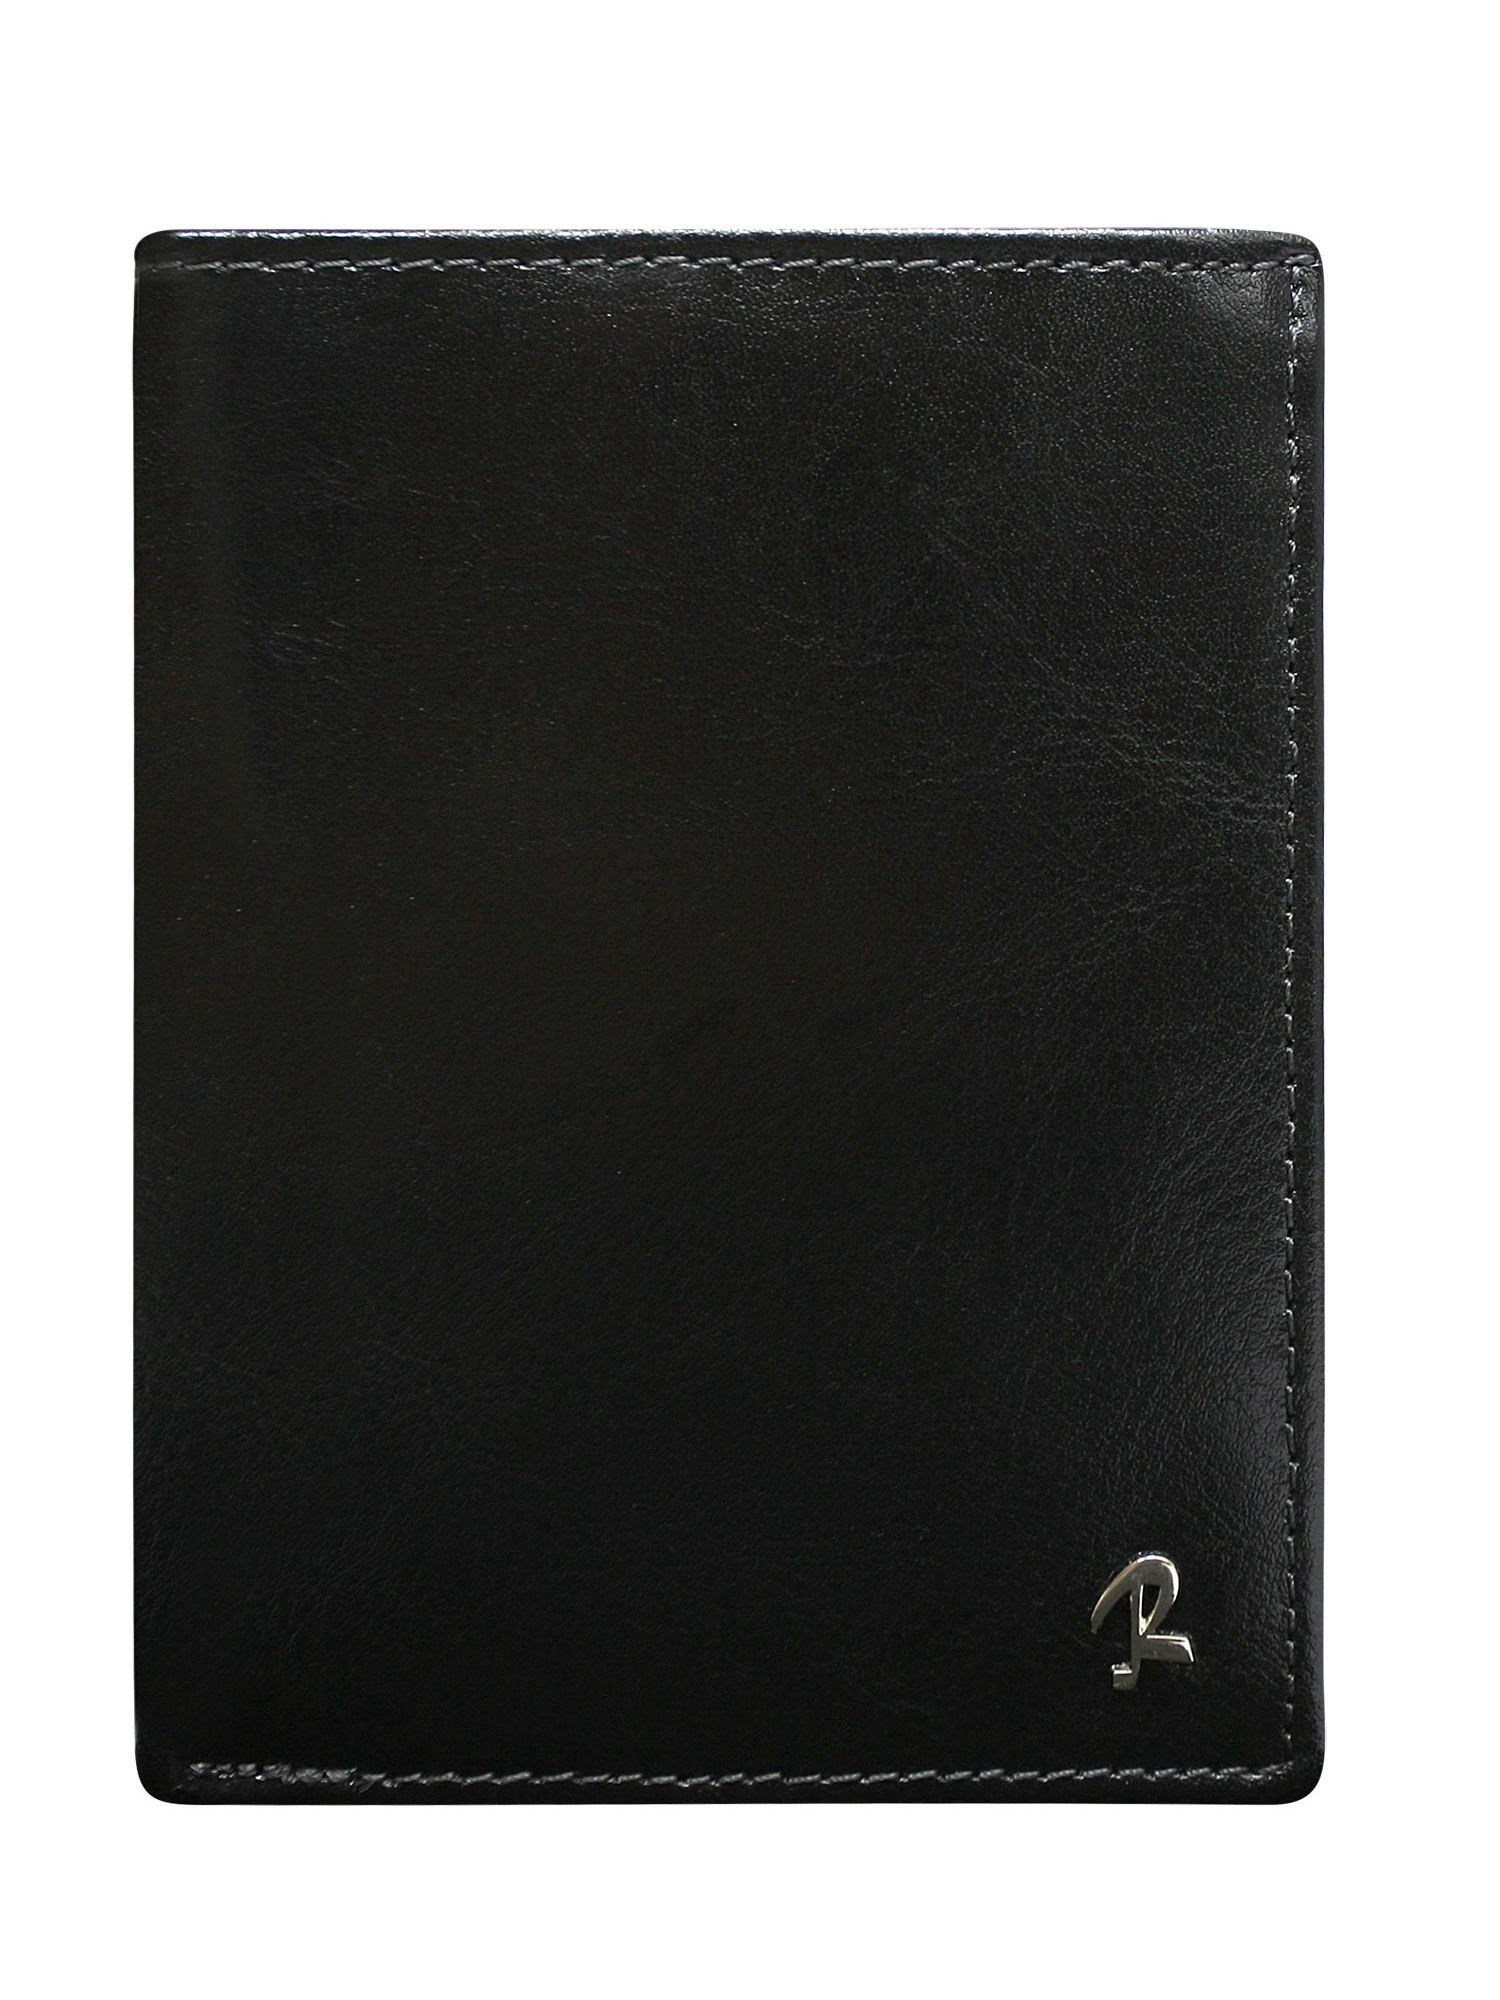 Peněženka CE PR N104 BSR VT.43 černá jedna velikost